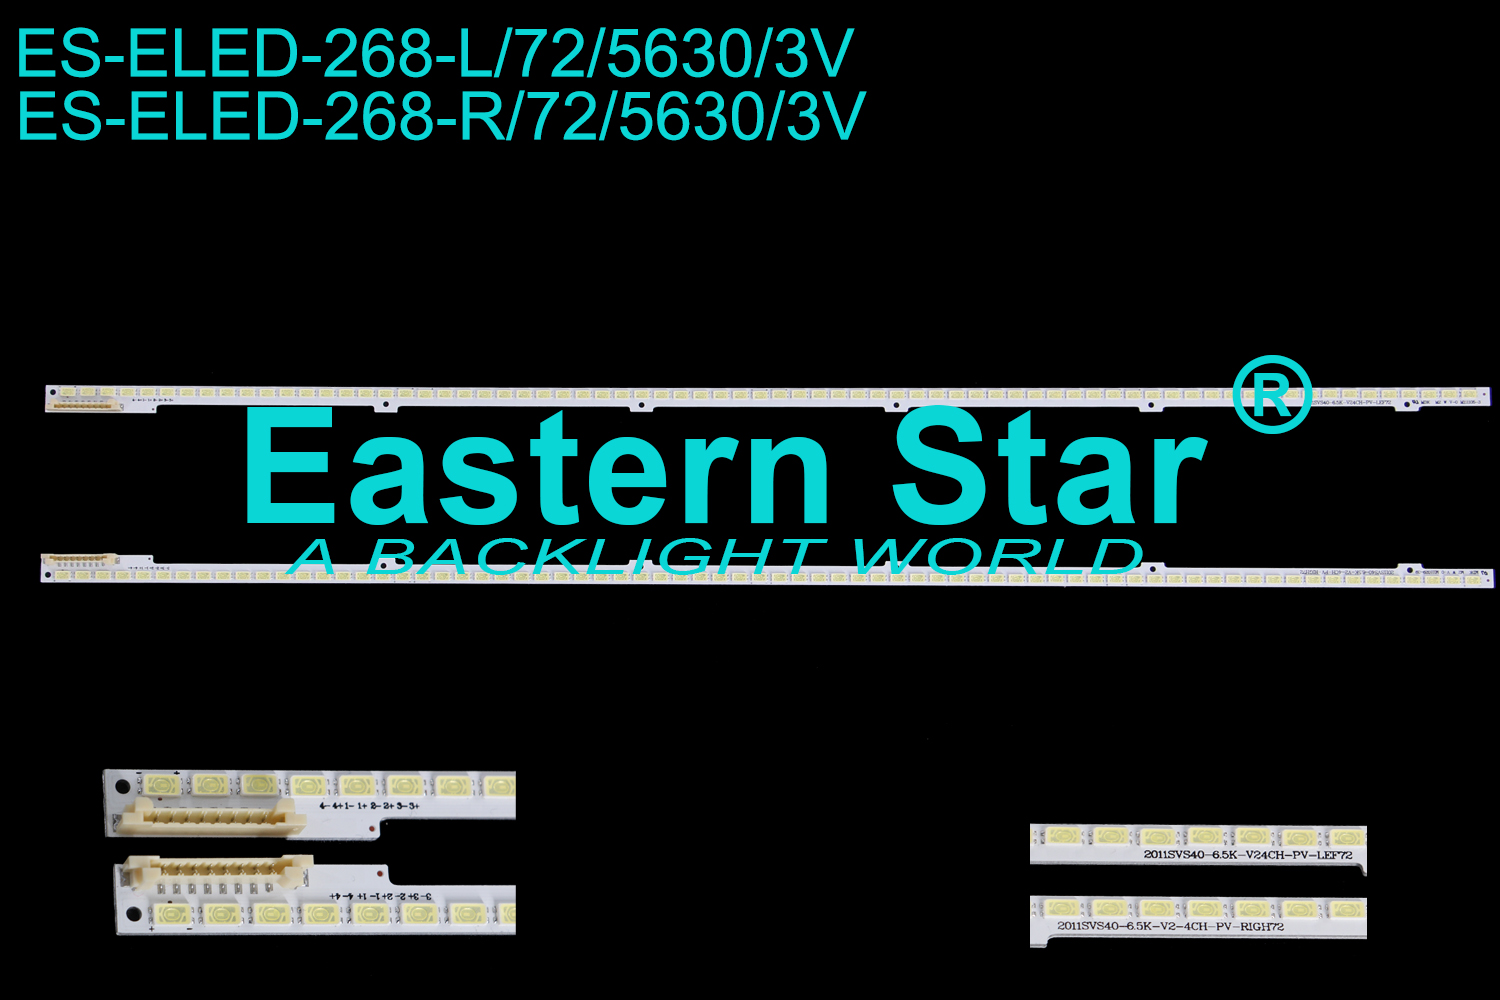 ES-ELED-268 ELED/EDGE TV backlight use for Samsung 40'' 72LEDs BN64-01640A 2011SVS40_6.5K_V2_4CH_PV_LEF72/RIGH72 LED STRIPS(2)